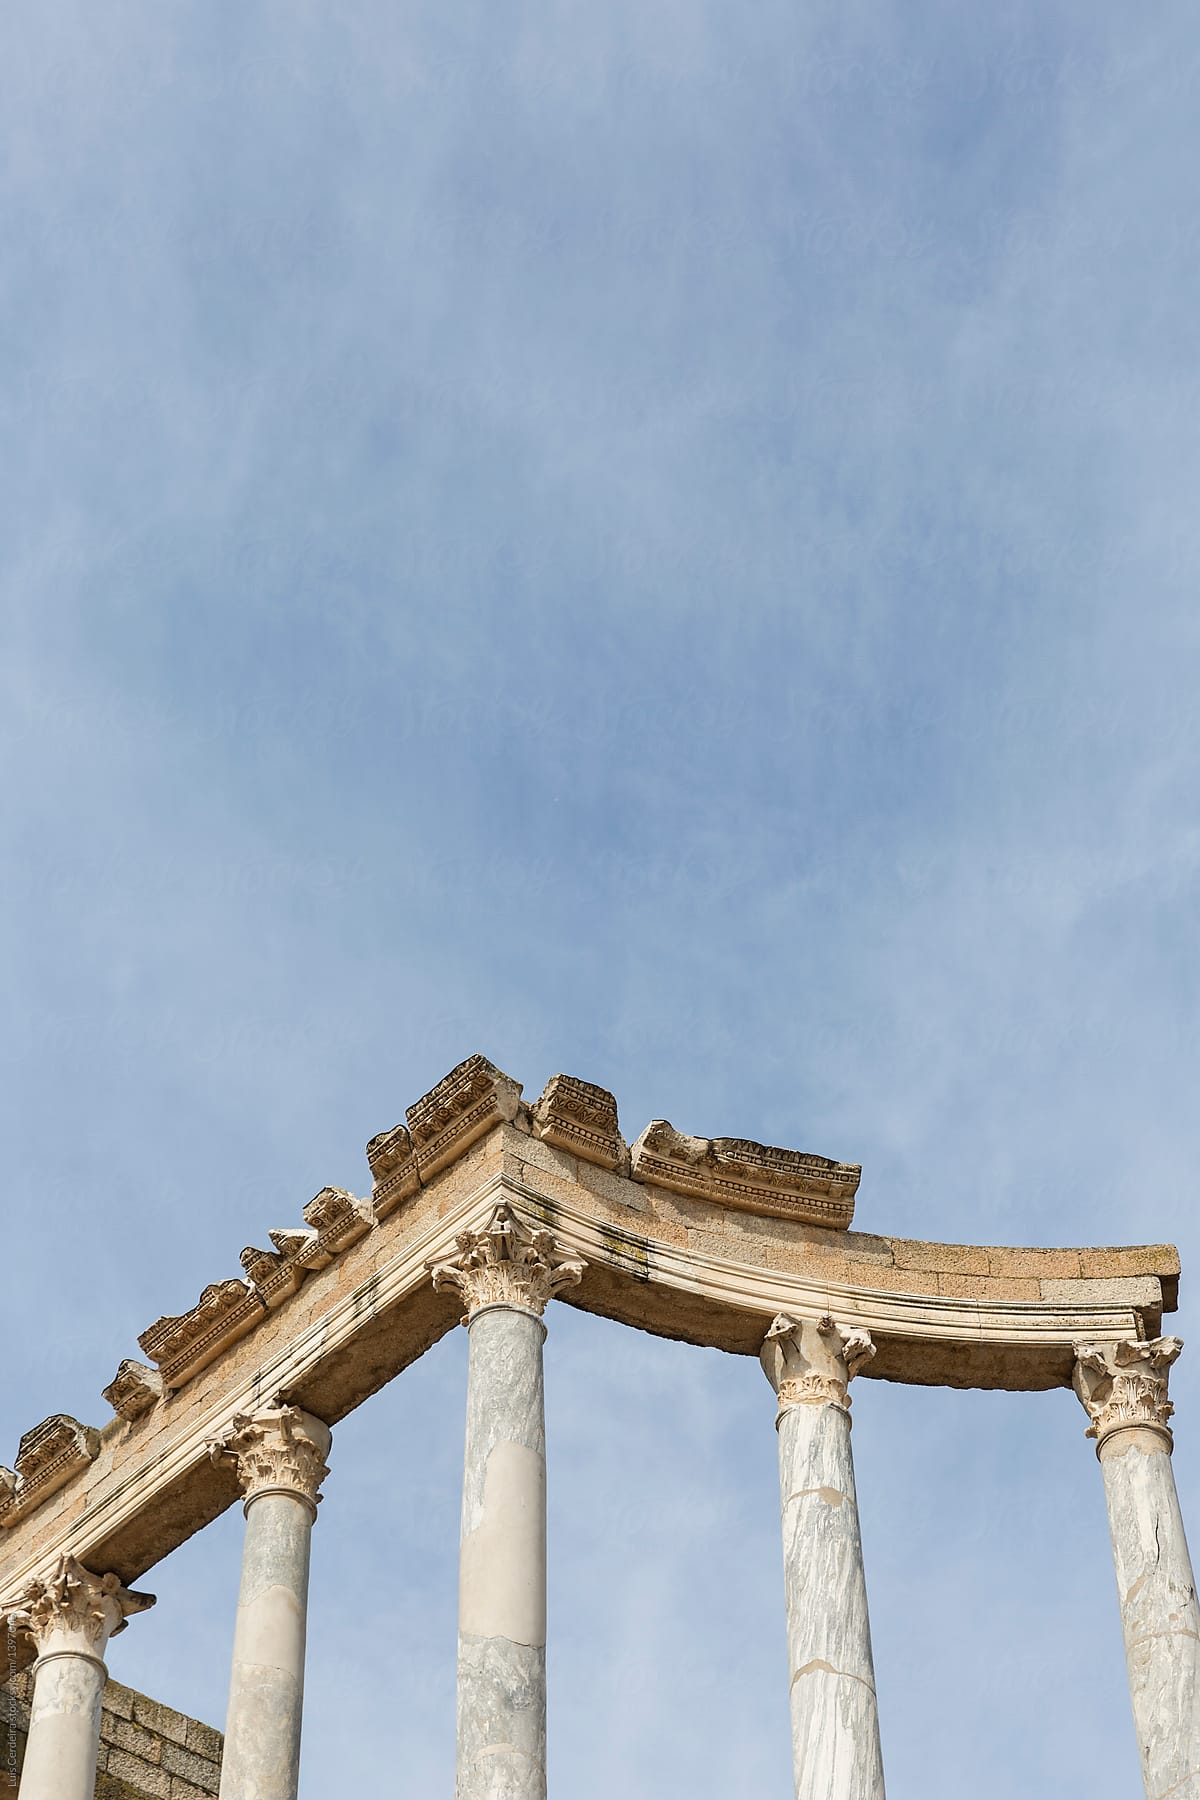 Roman theater of Merida